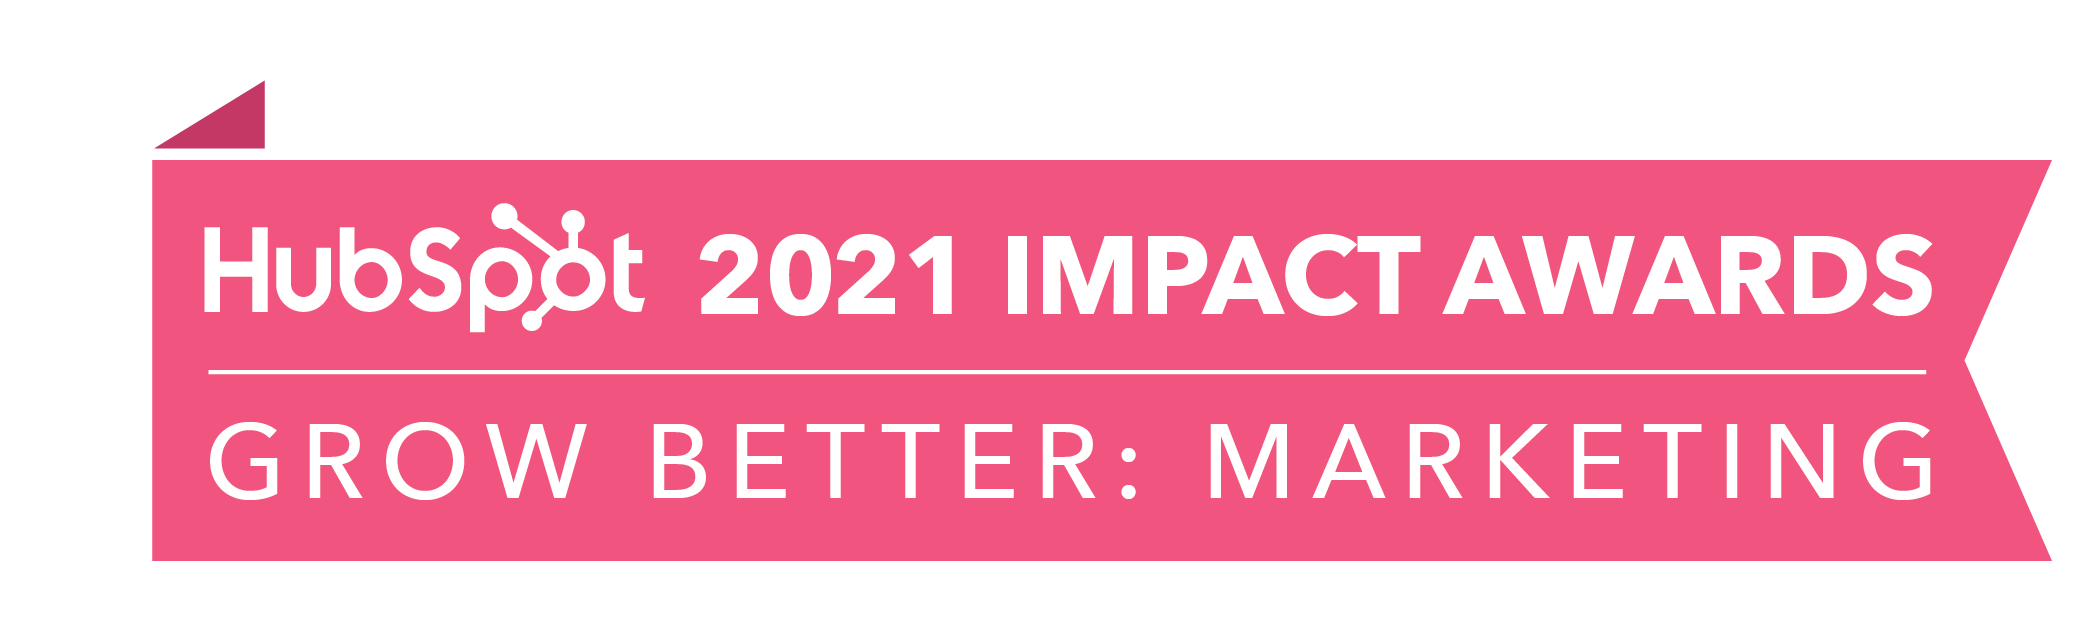 HubSpot_ImpactAwards_2021_GBMarketing2-4